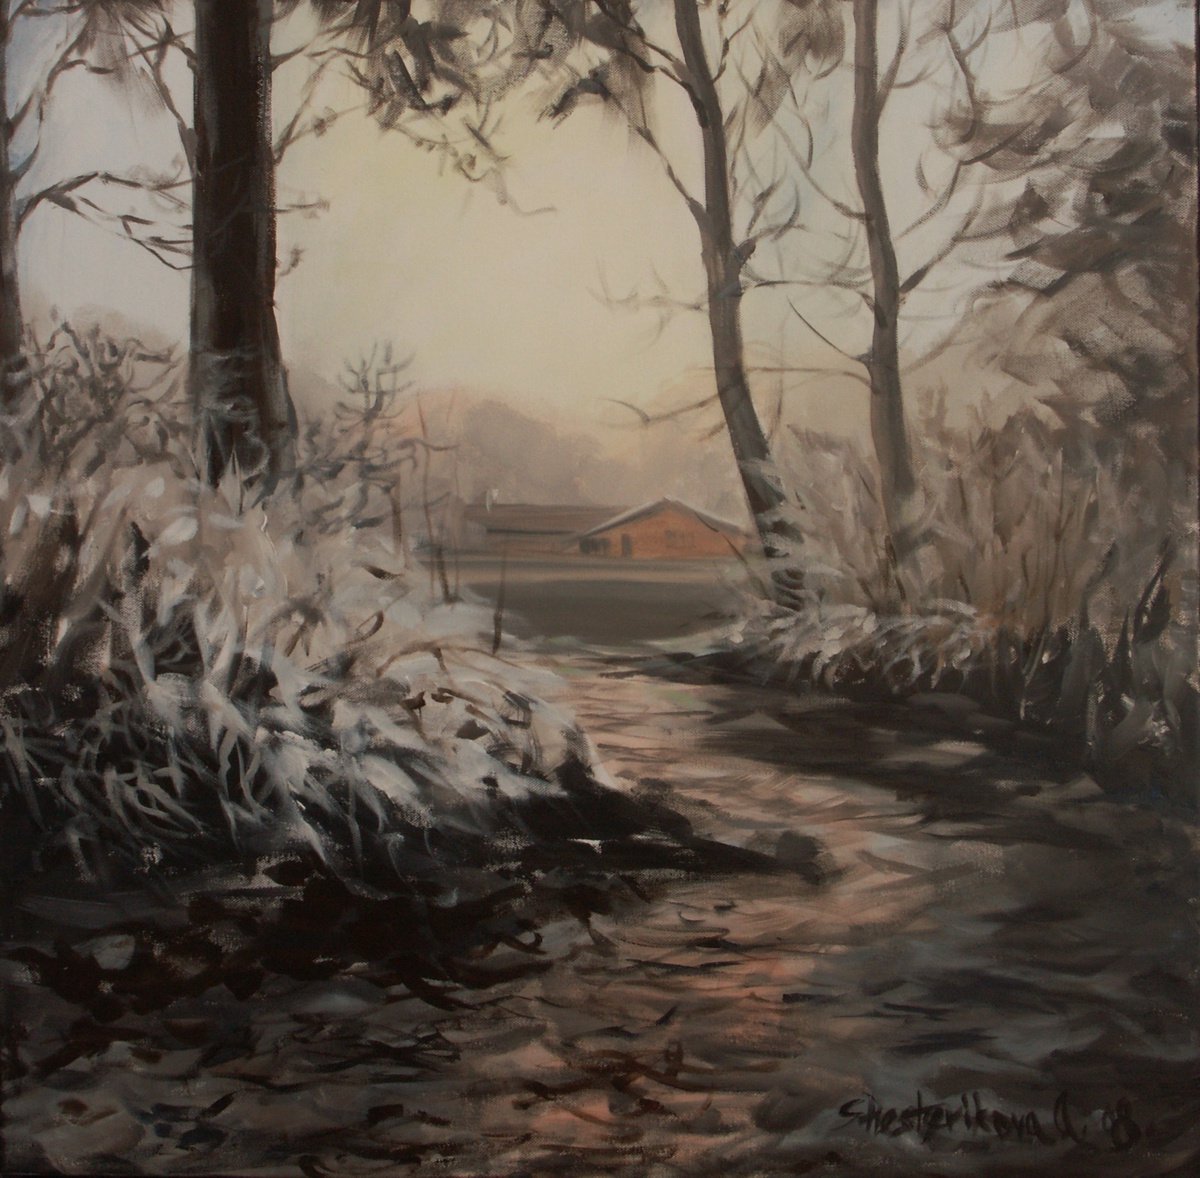 Winter Elegy by Anna Shesterikova